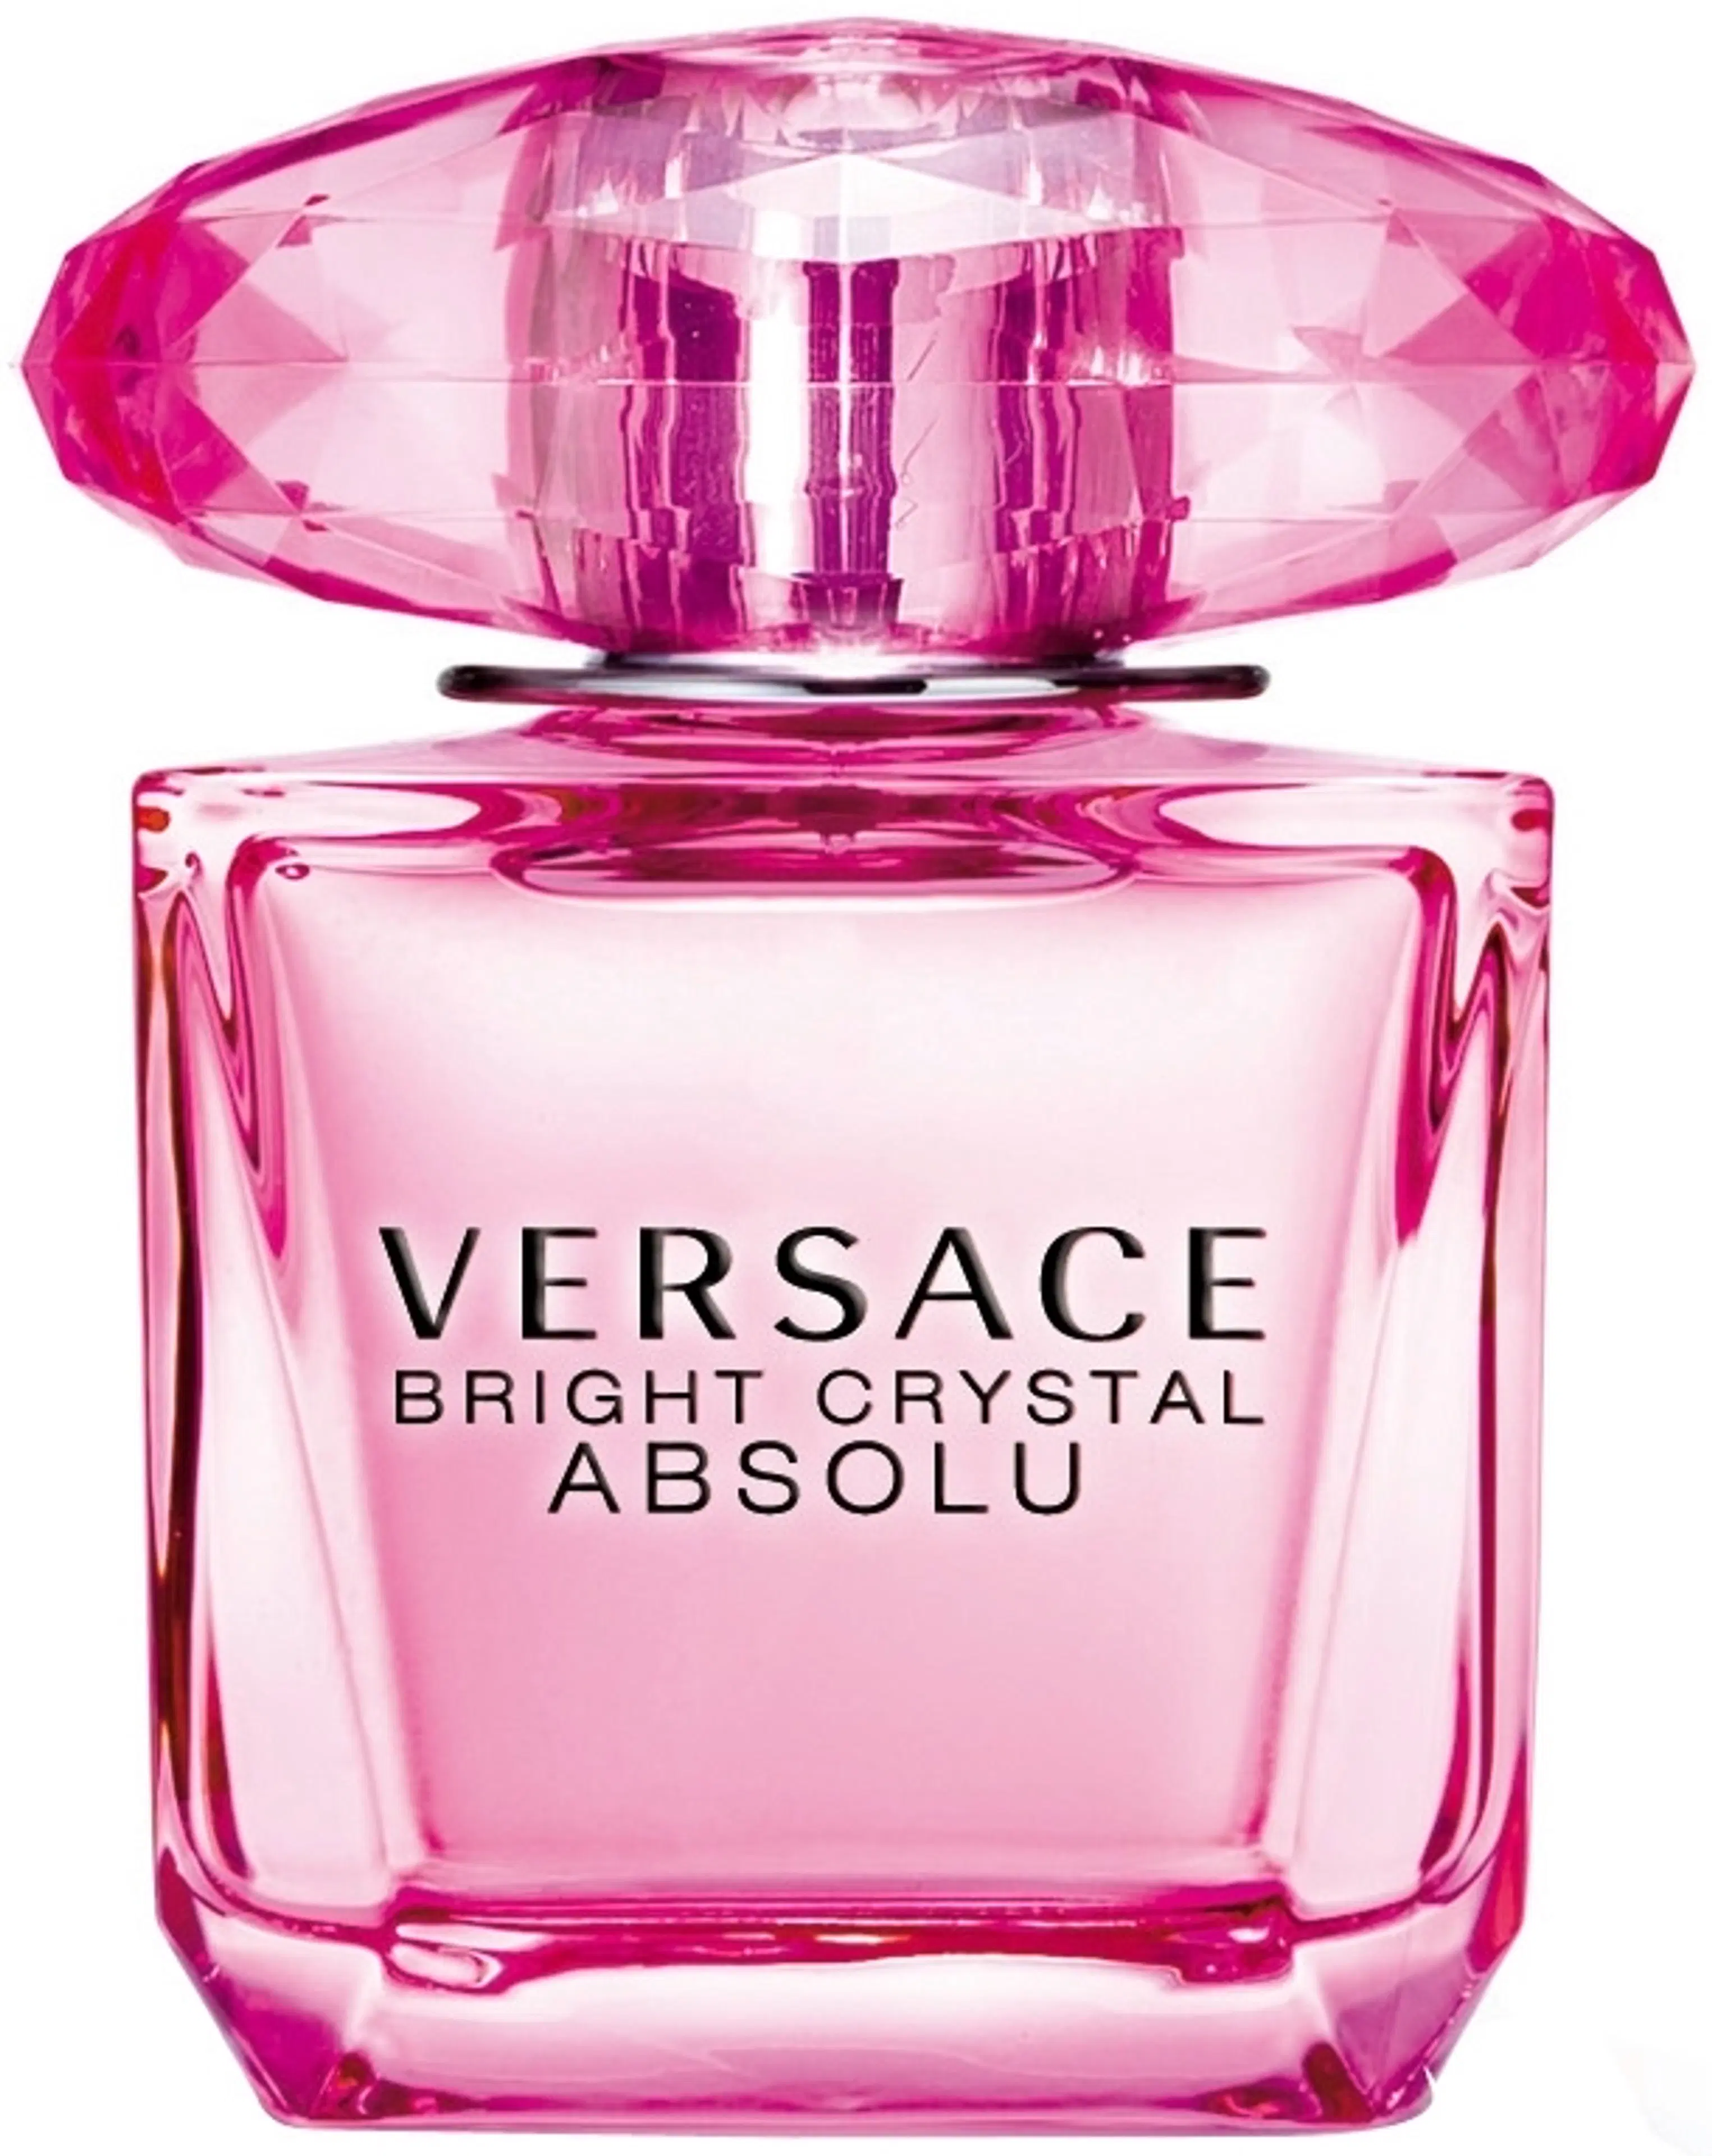 Versace Bright Crystal Absolu EdP tuoksu 30ml